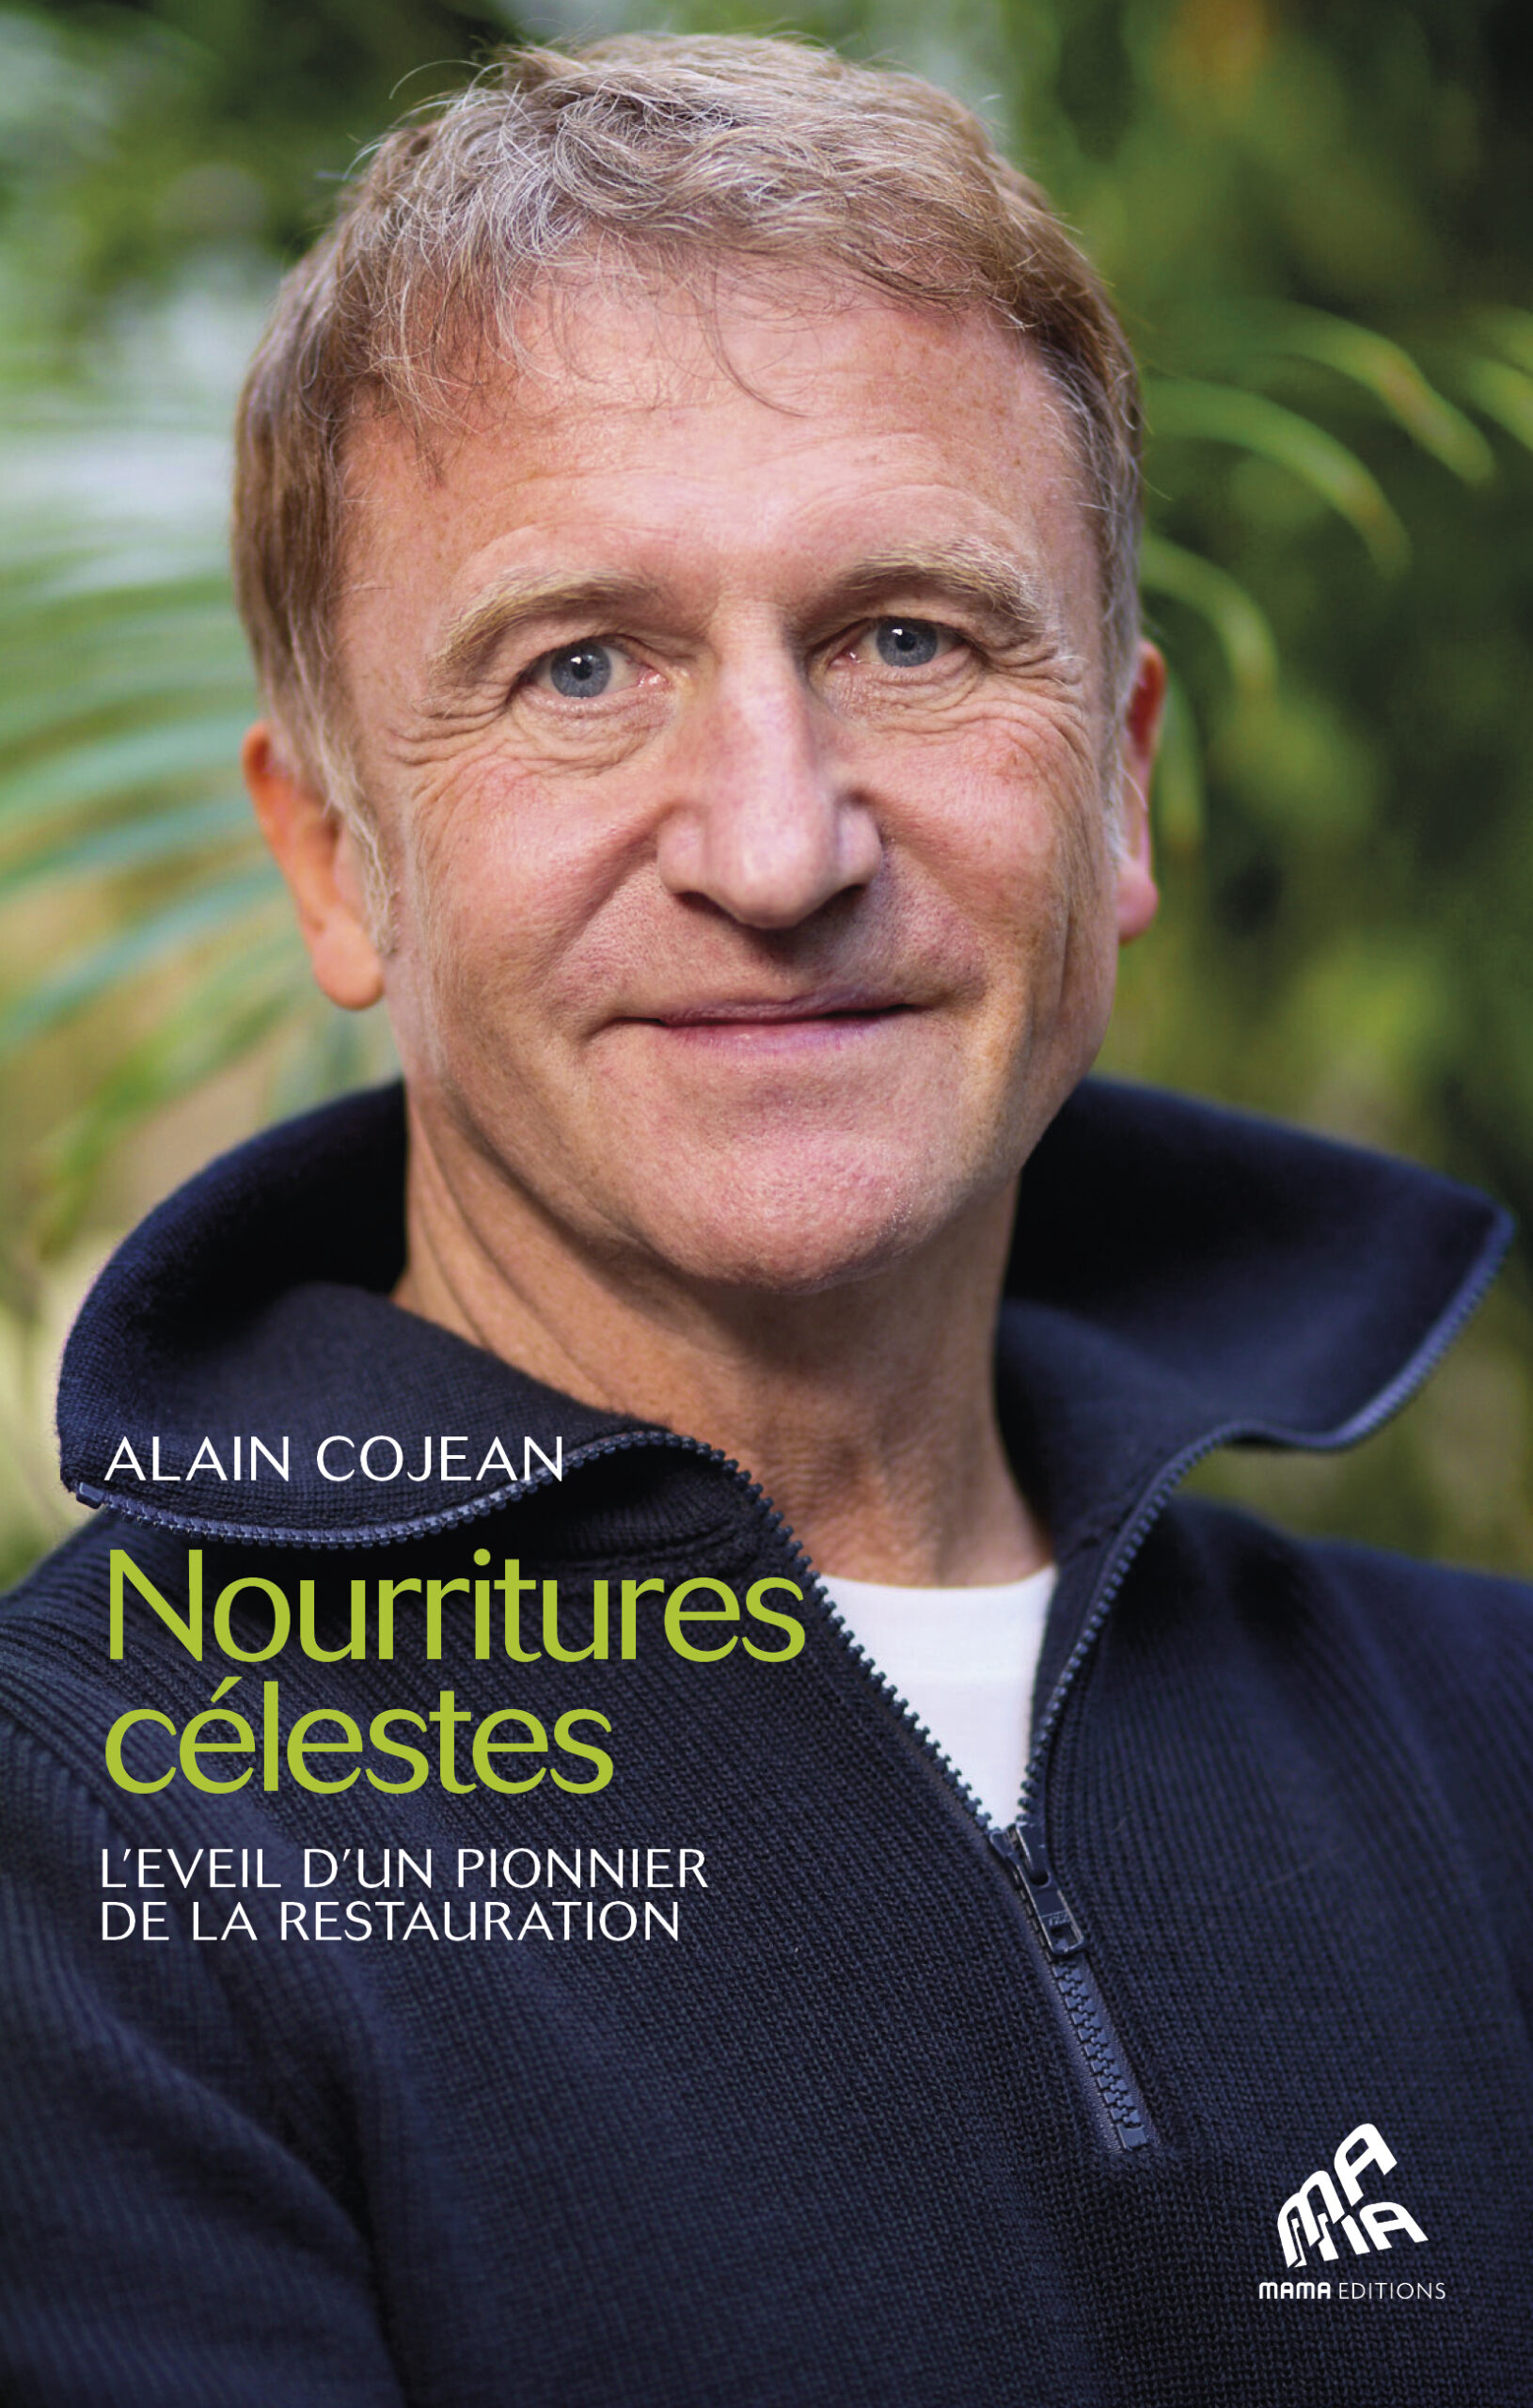 NOURRITURE CELESTE – Alain COJEAN